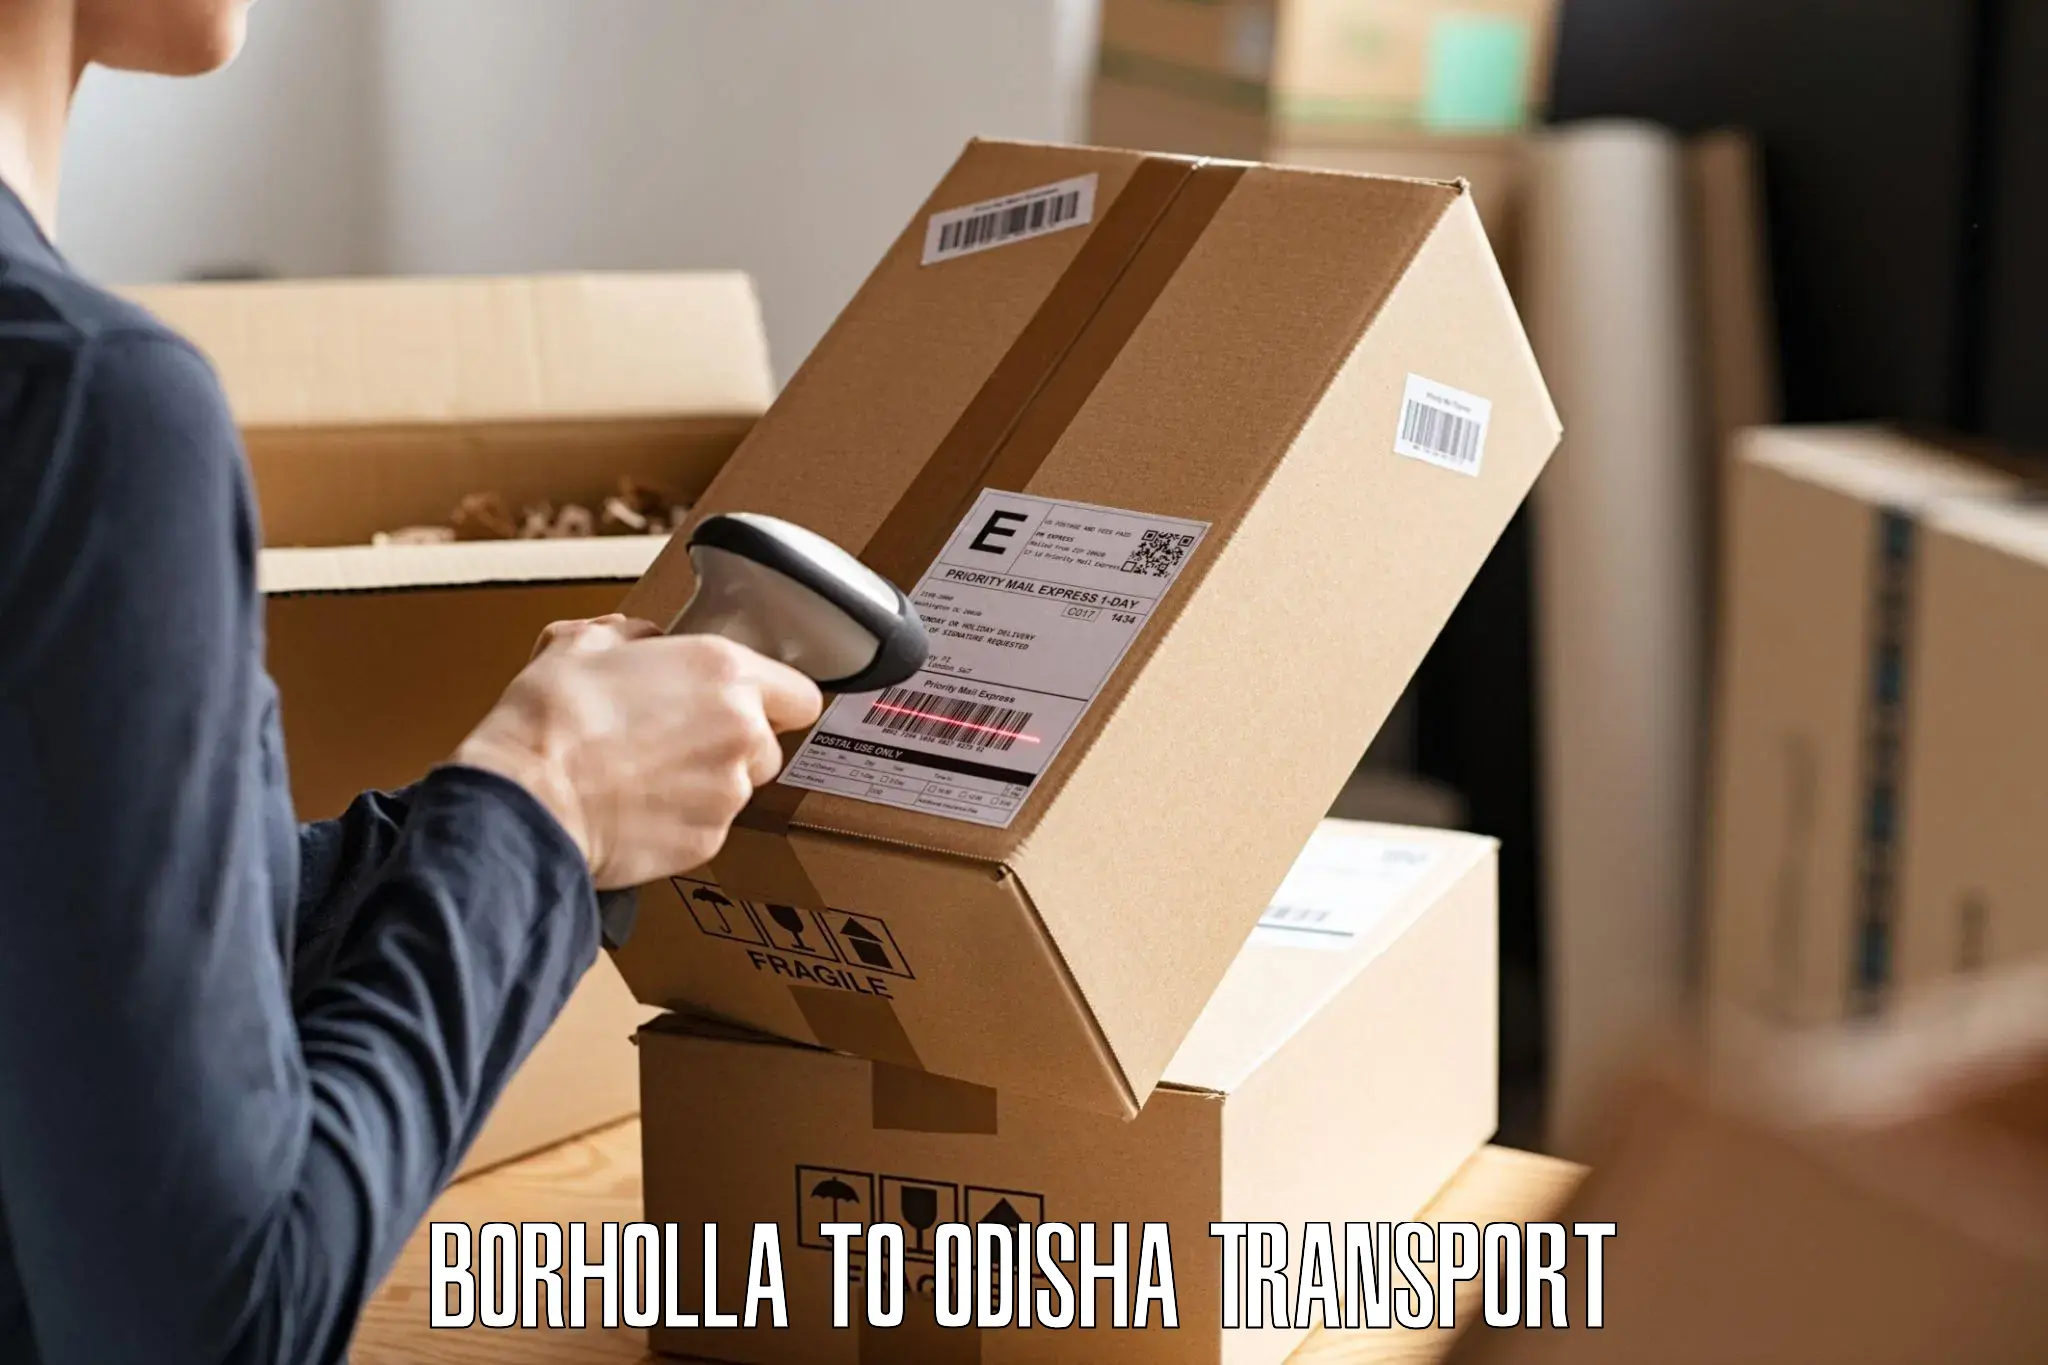 Nearest transport service Borholla to Udala